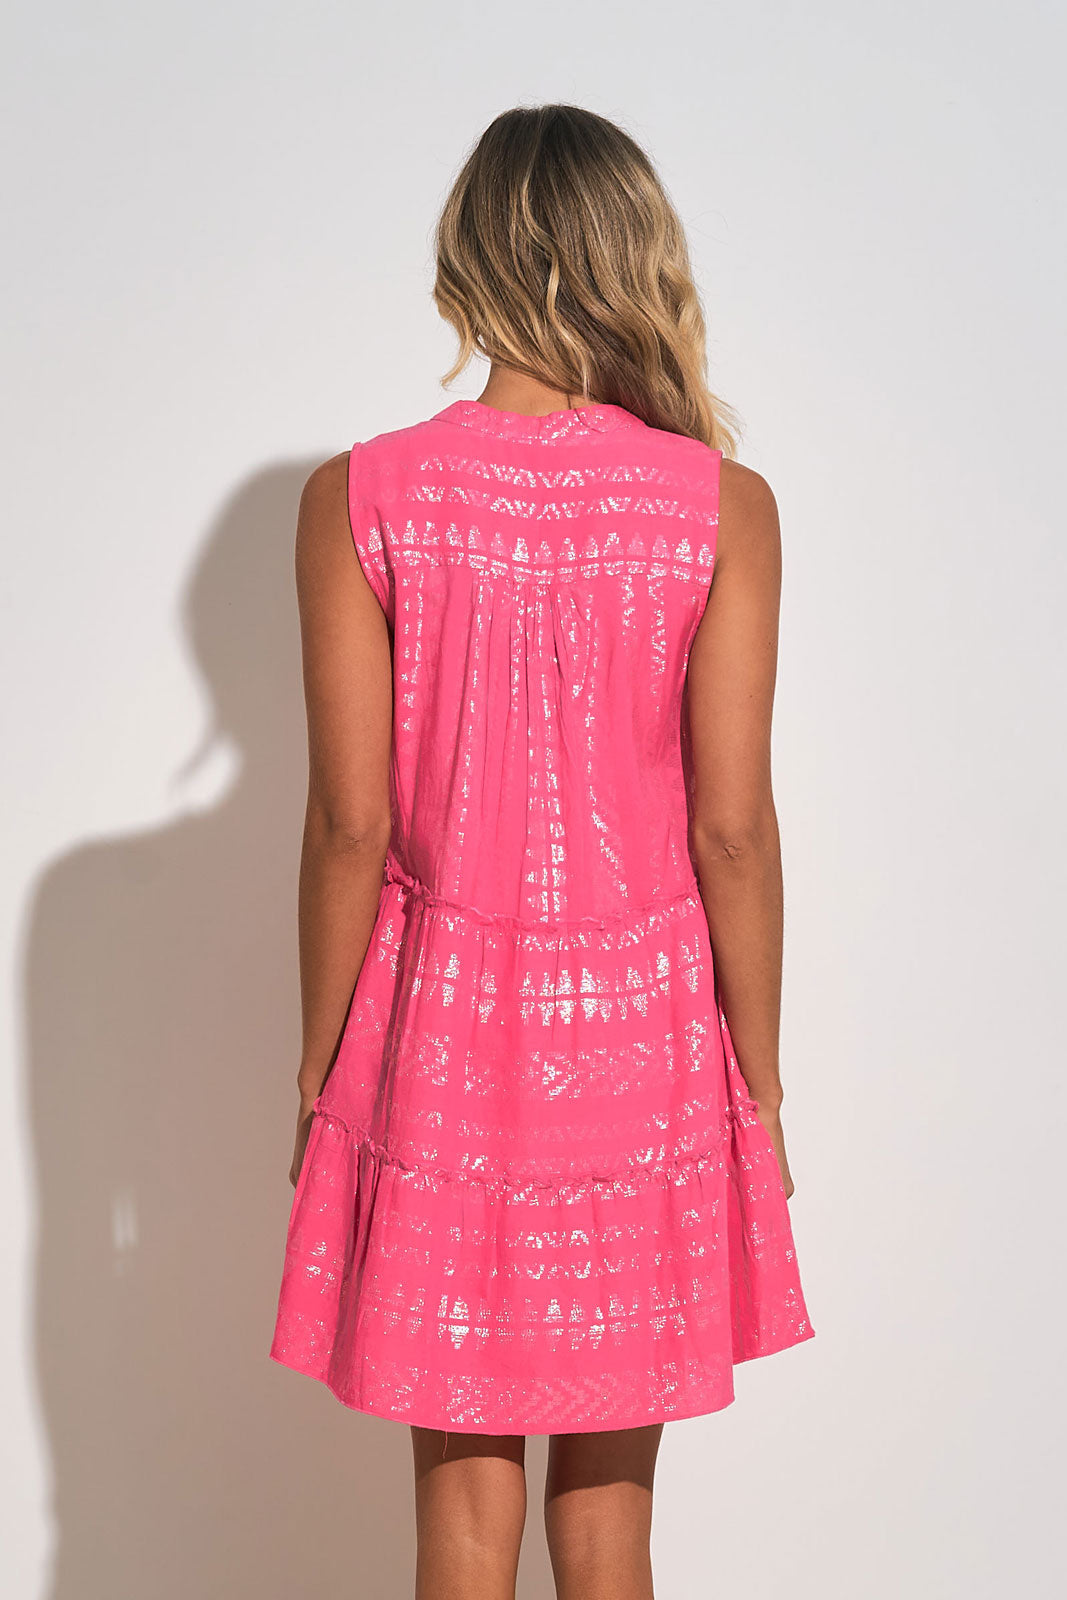 Short Pink Dress